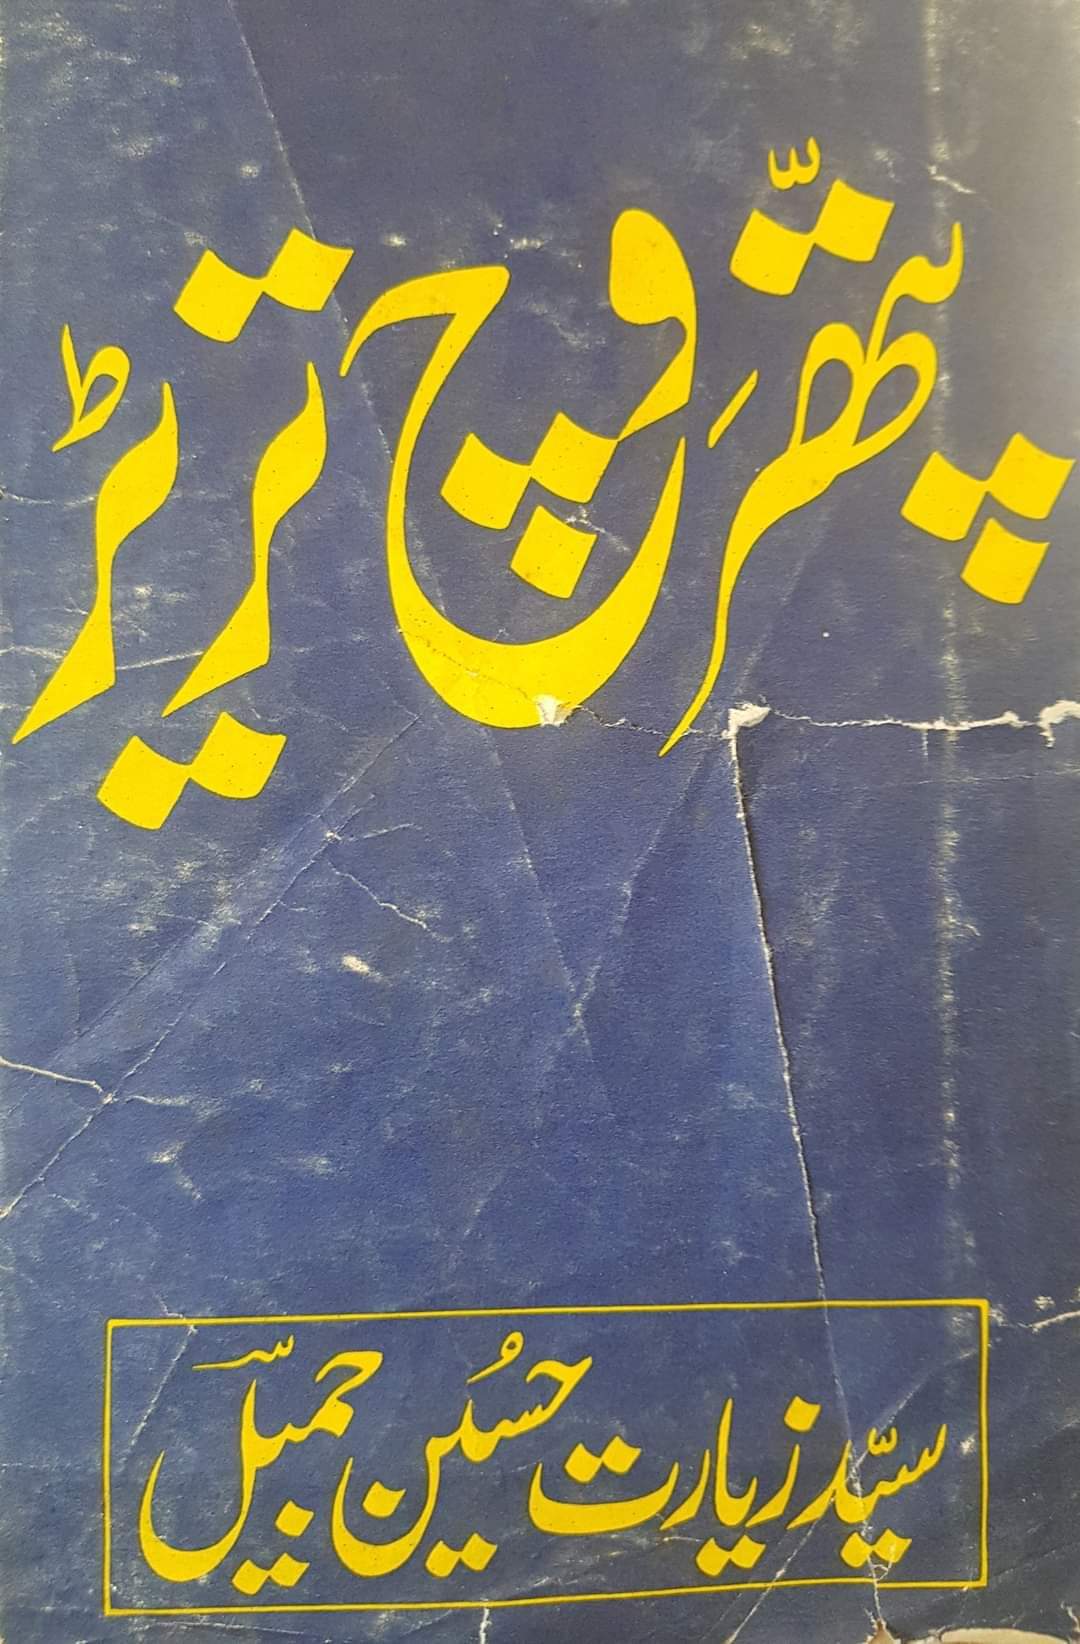 Syed Ziyarat Hussain Jamil Kamzooran Mariyan Tay Lasiyan Da Ankhi Shayar1